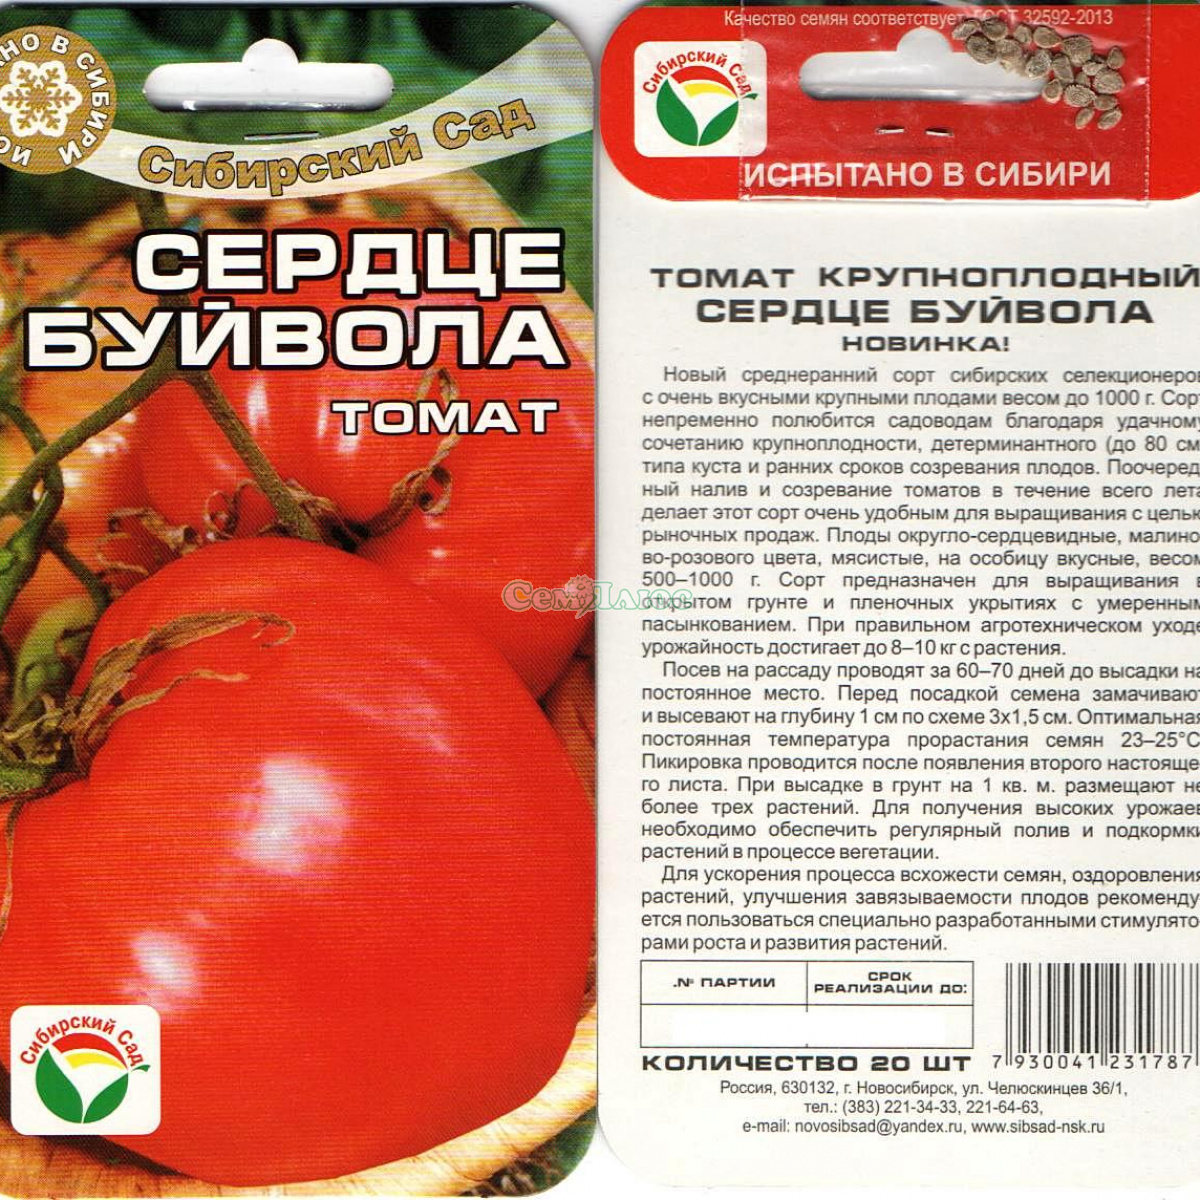 Томат "бугай f1": характеристика и описание сорта помидор с фото, отзывы об урожайности, бугай красный и розовый